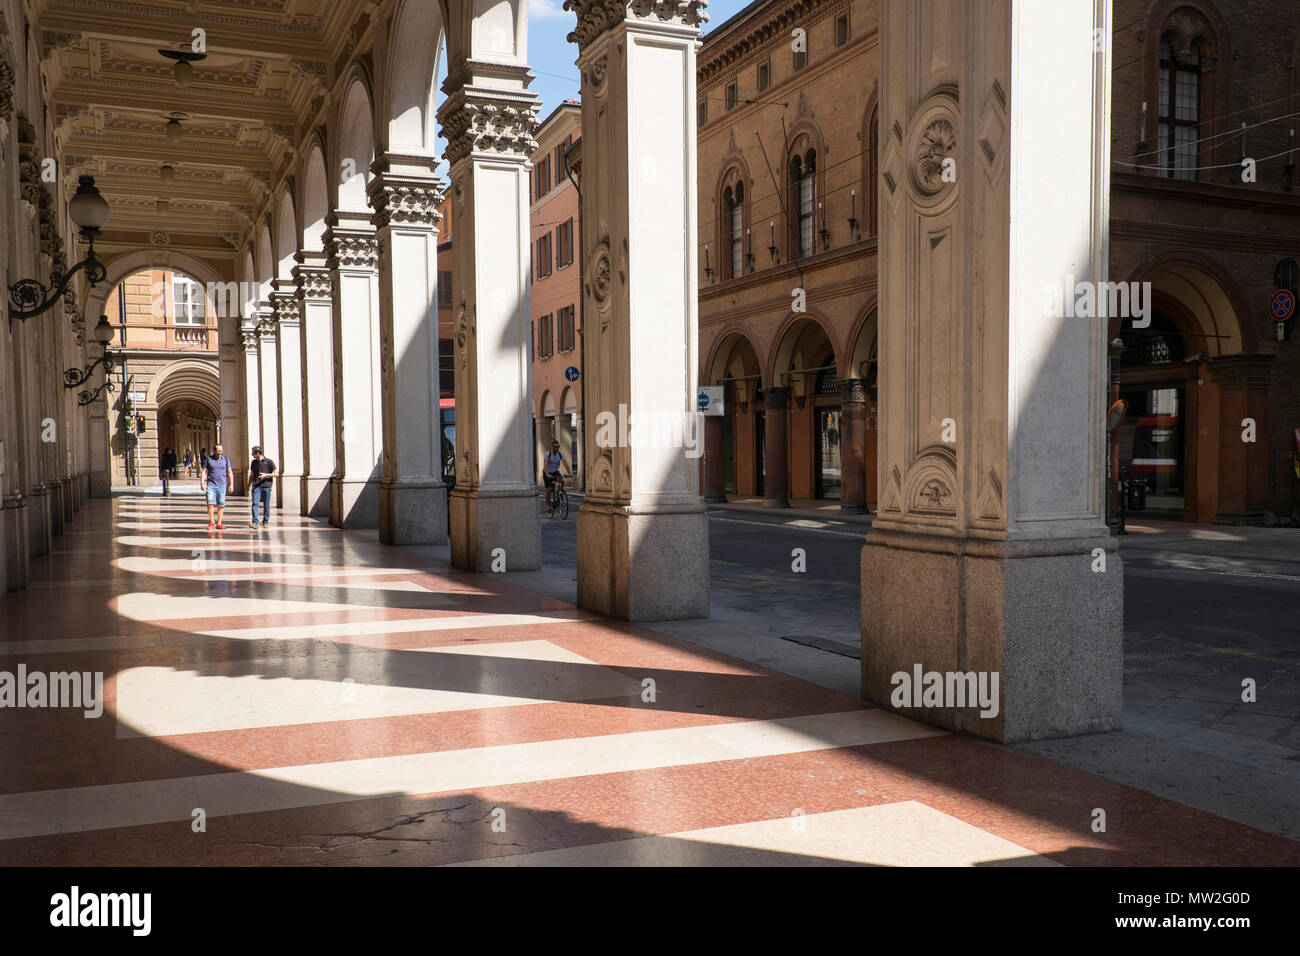 Italy, Emilia-Romagna, Bologna: archways, via Zamboni Stock Photo